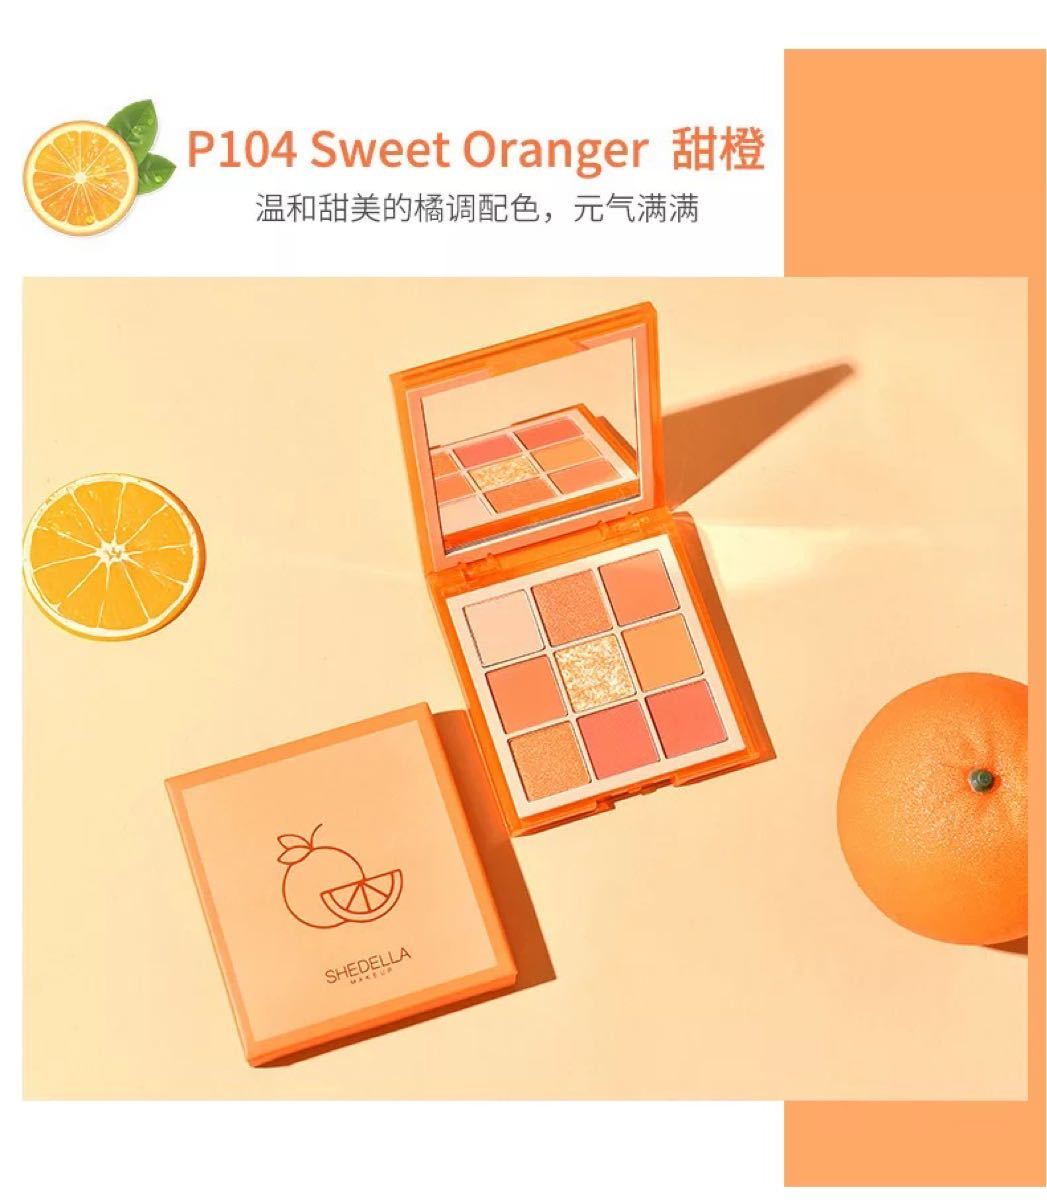 shedella 9色 オレンジ みかん アイシャドウパレット # 04 sweetorange スイートオレンジ